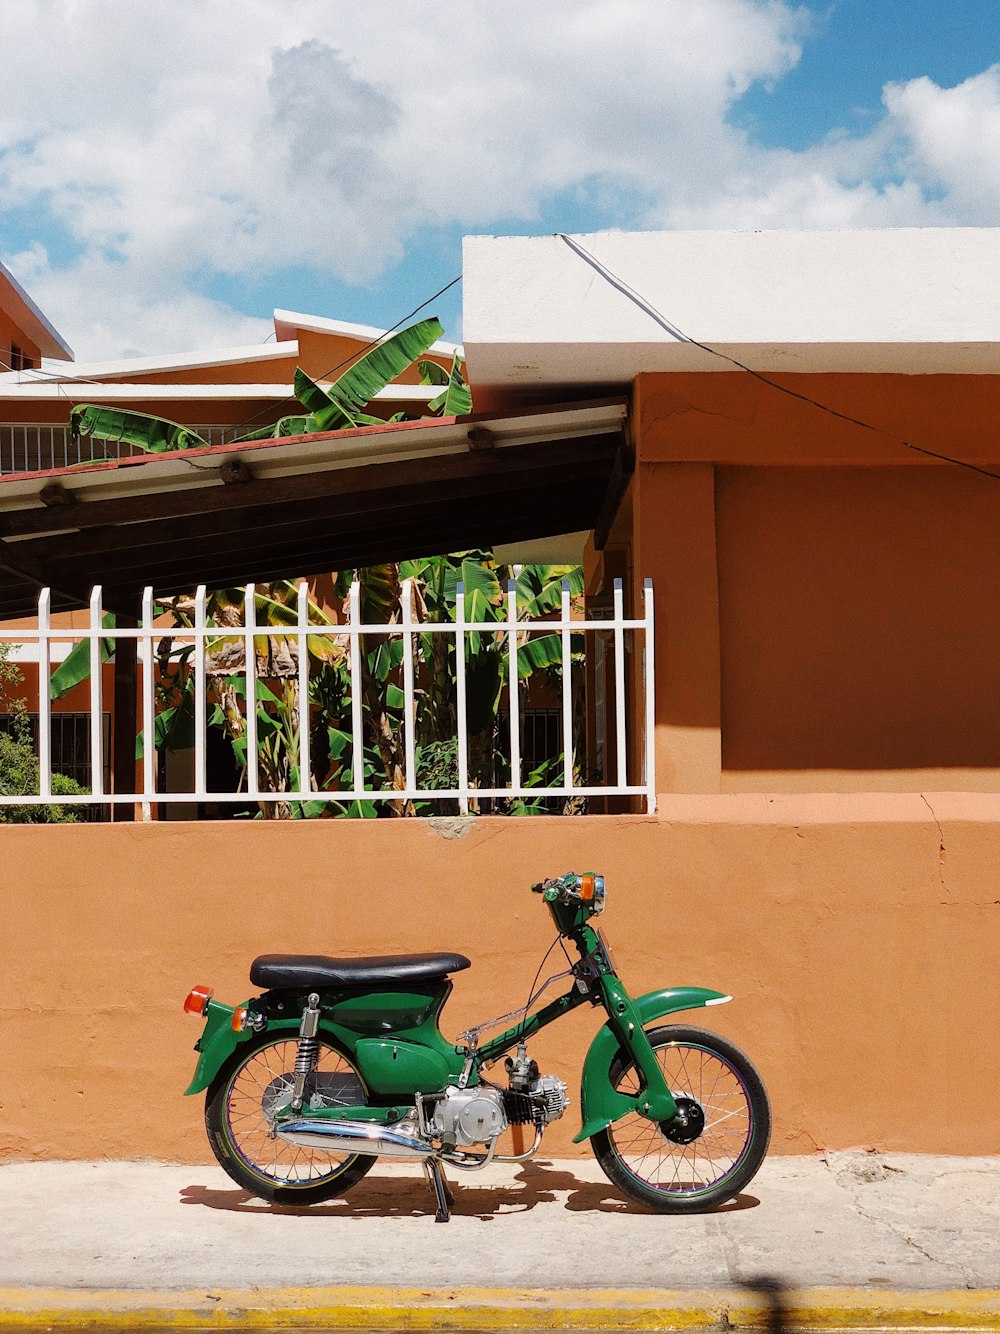 Grünes und schwarzes Motorrad tagsüber neben braunem Betongebäude geparkt